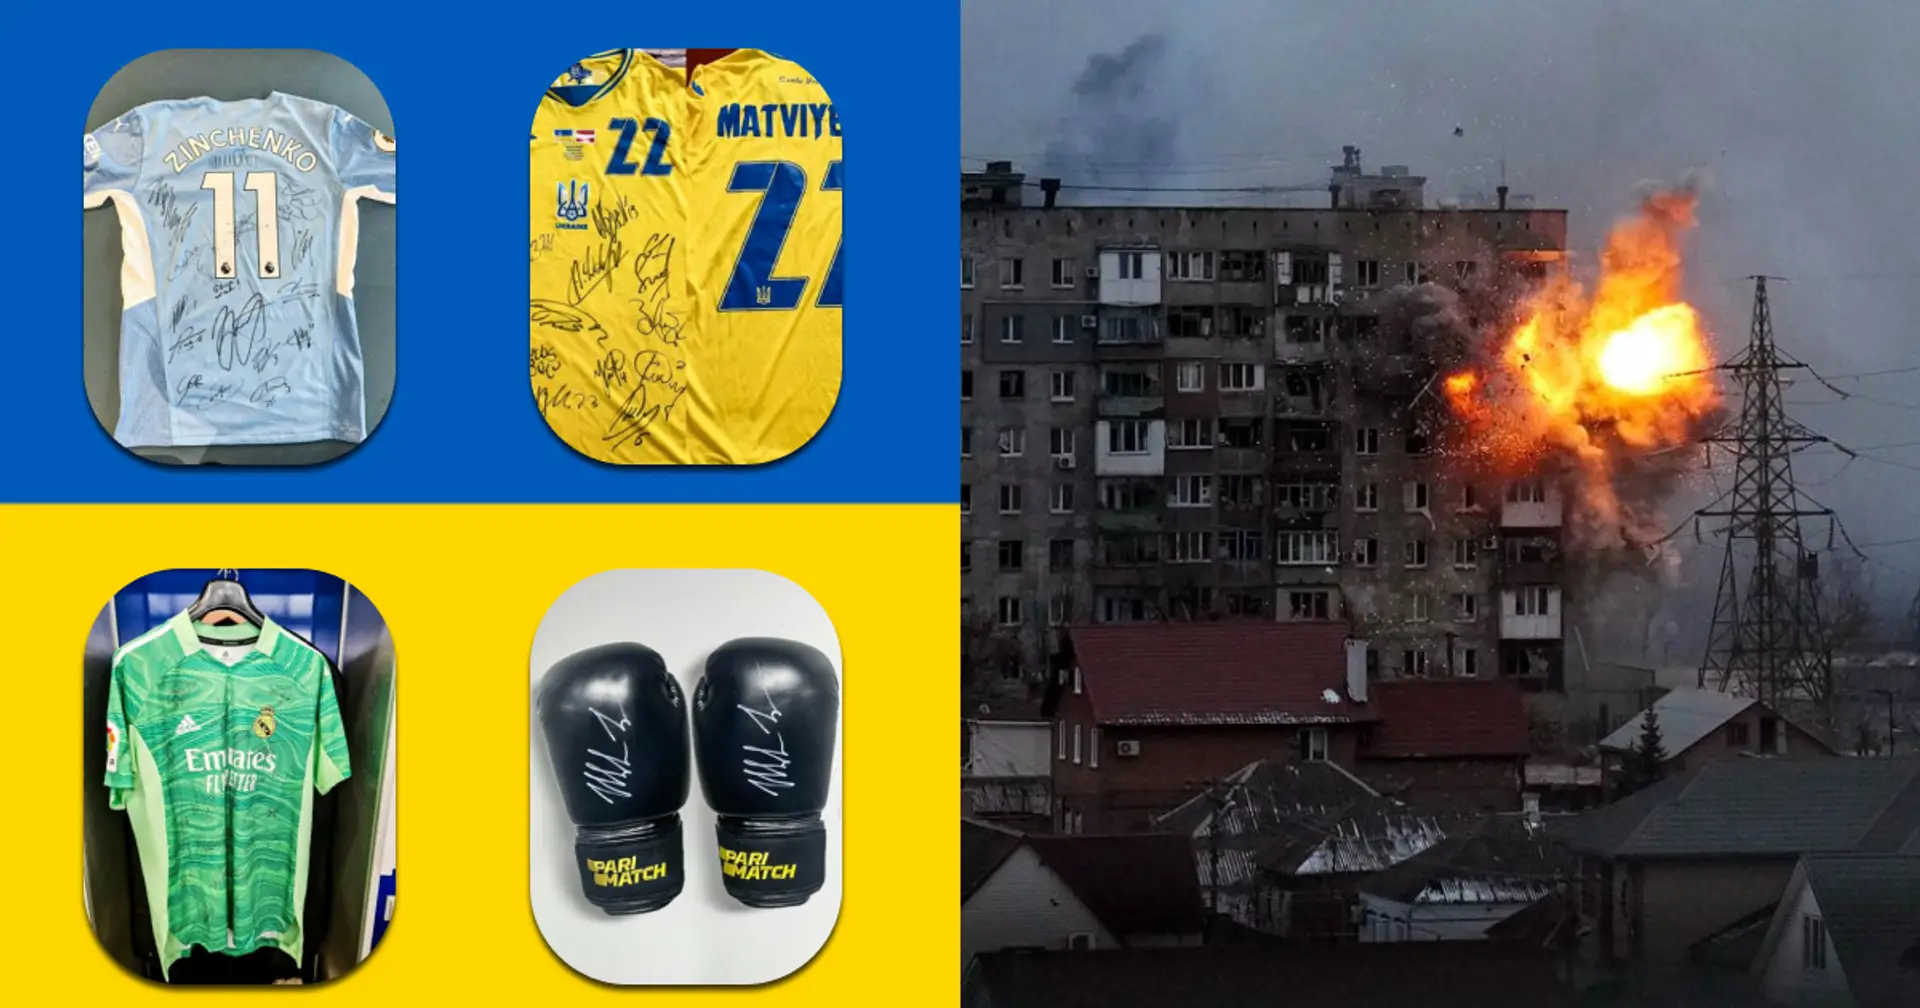 Secondo giro d'aste con cimeli unici dei migliori atleti per aiutare l'Ucraina: i guanti di Tyson, la camicia di Zinchenko e molto altro